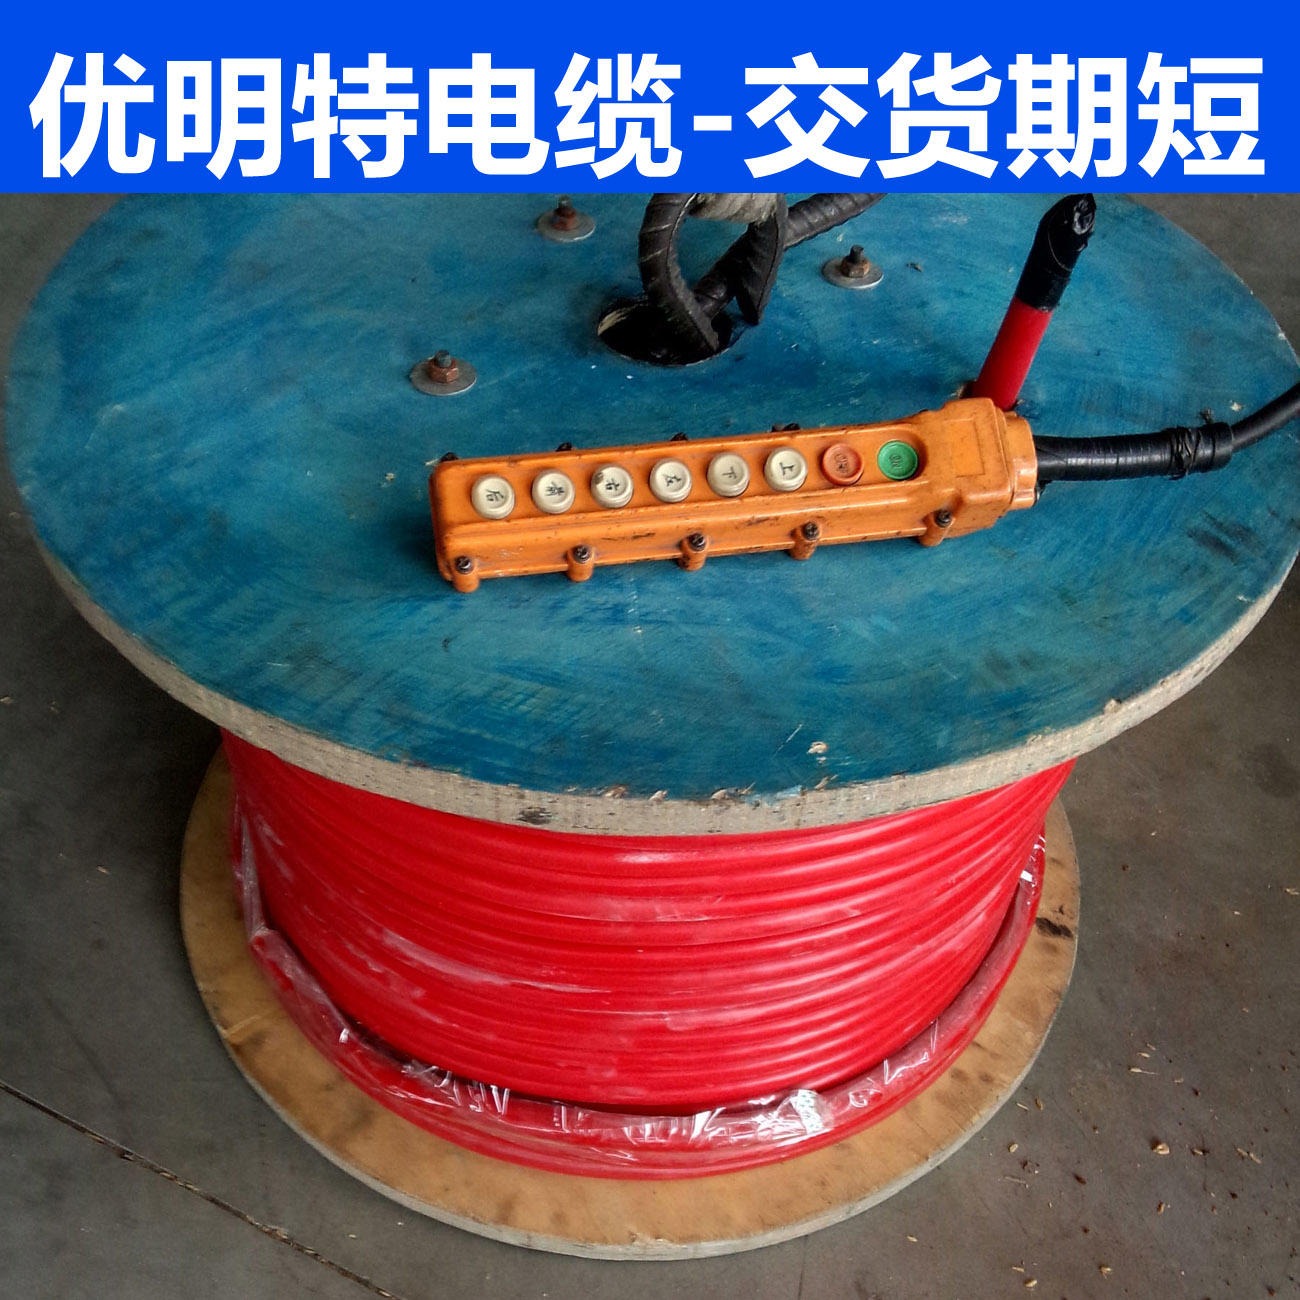 葫芦专用电缆 RVV2G电缆 KVVRC电缆 电动葫芦电缆 优明特生产厂家 现货库存